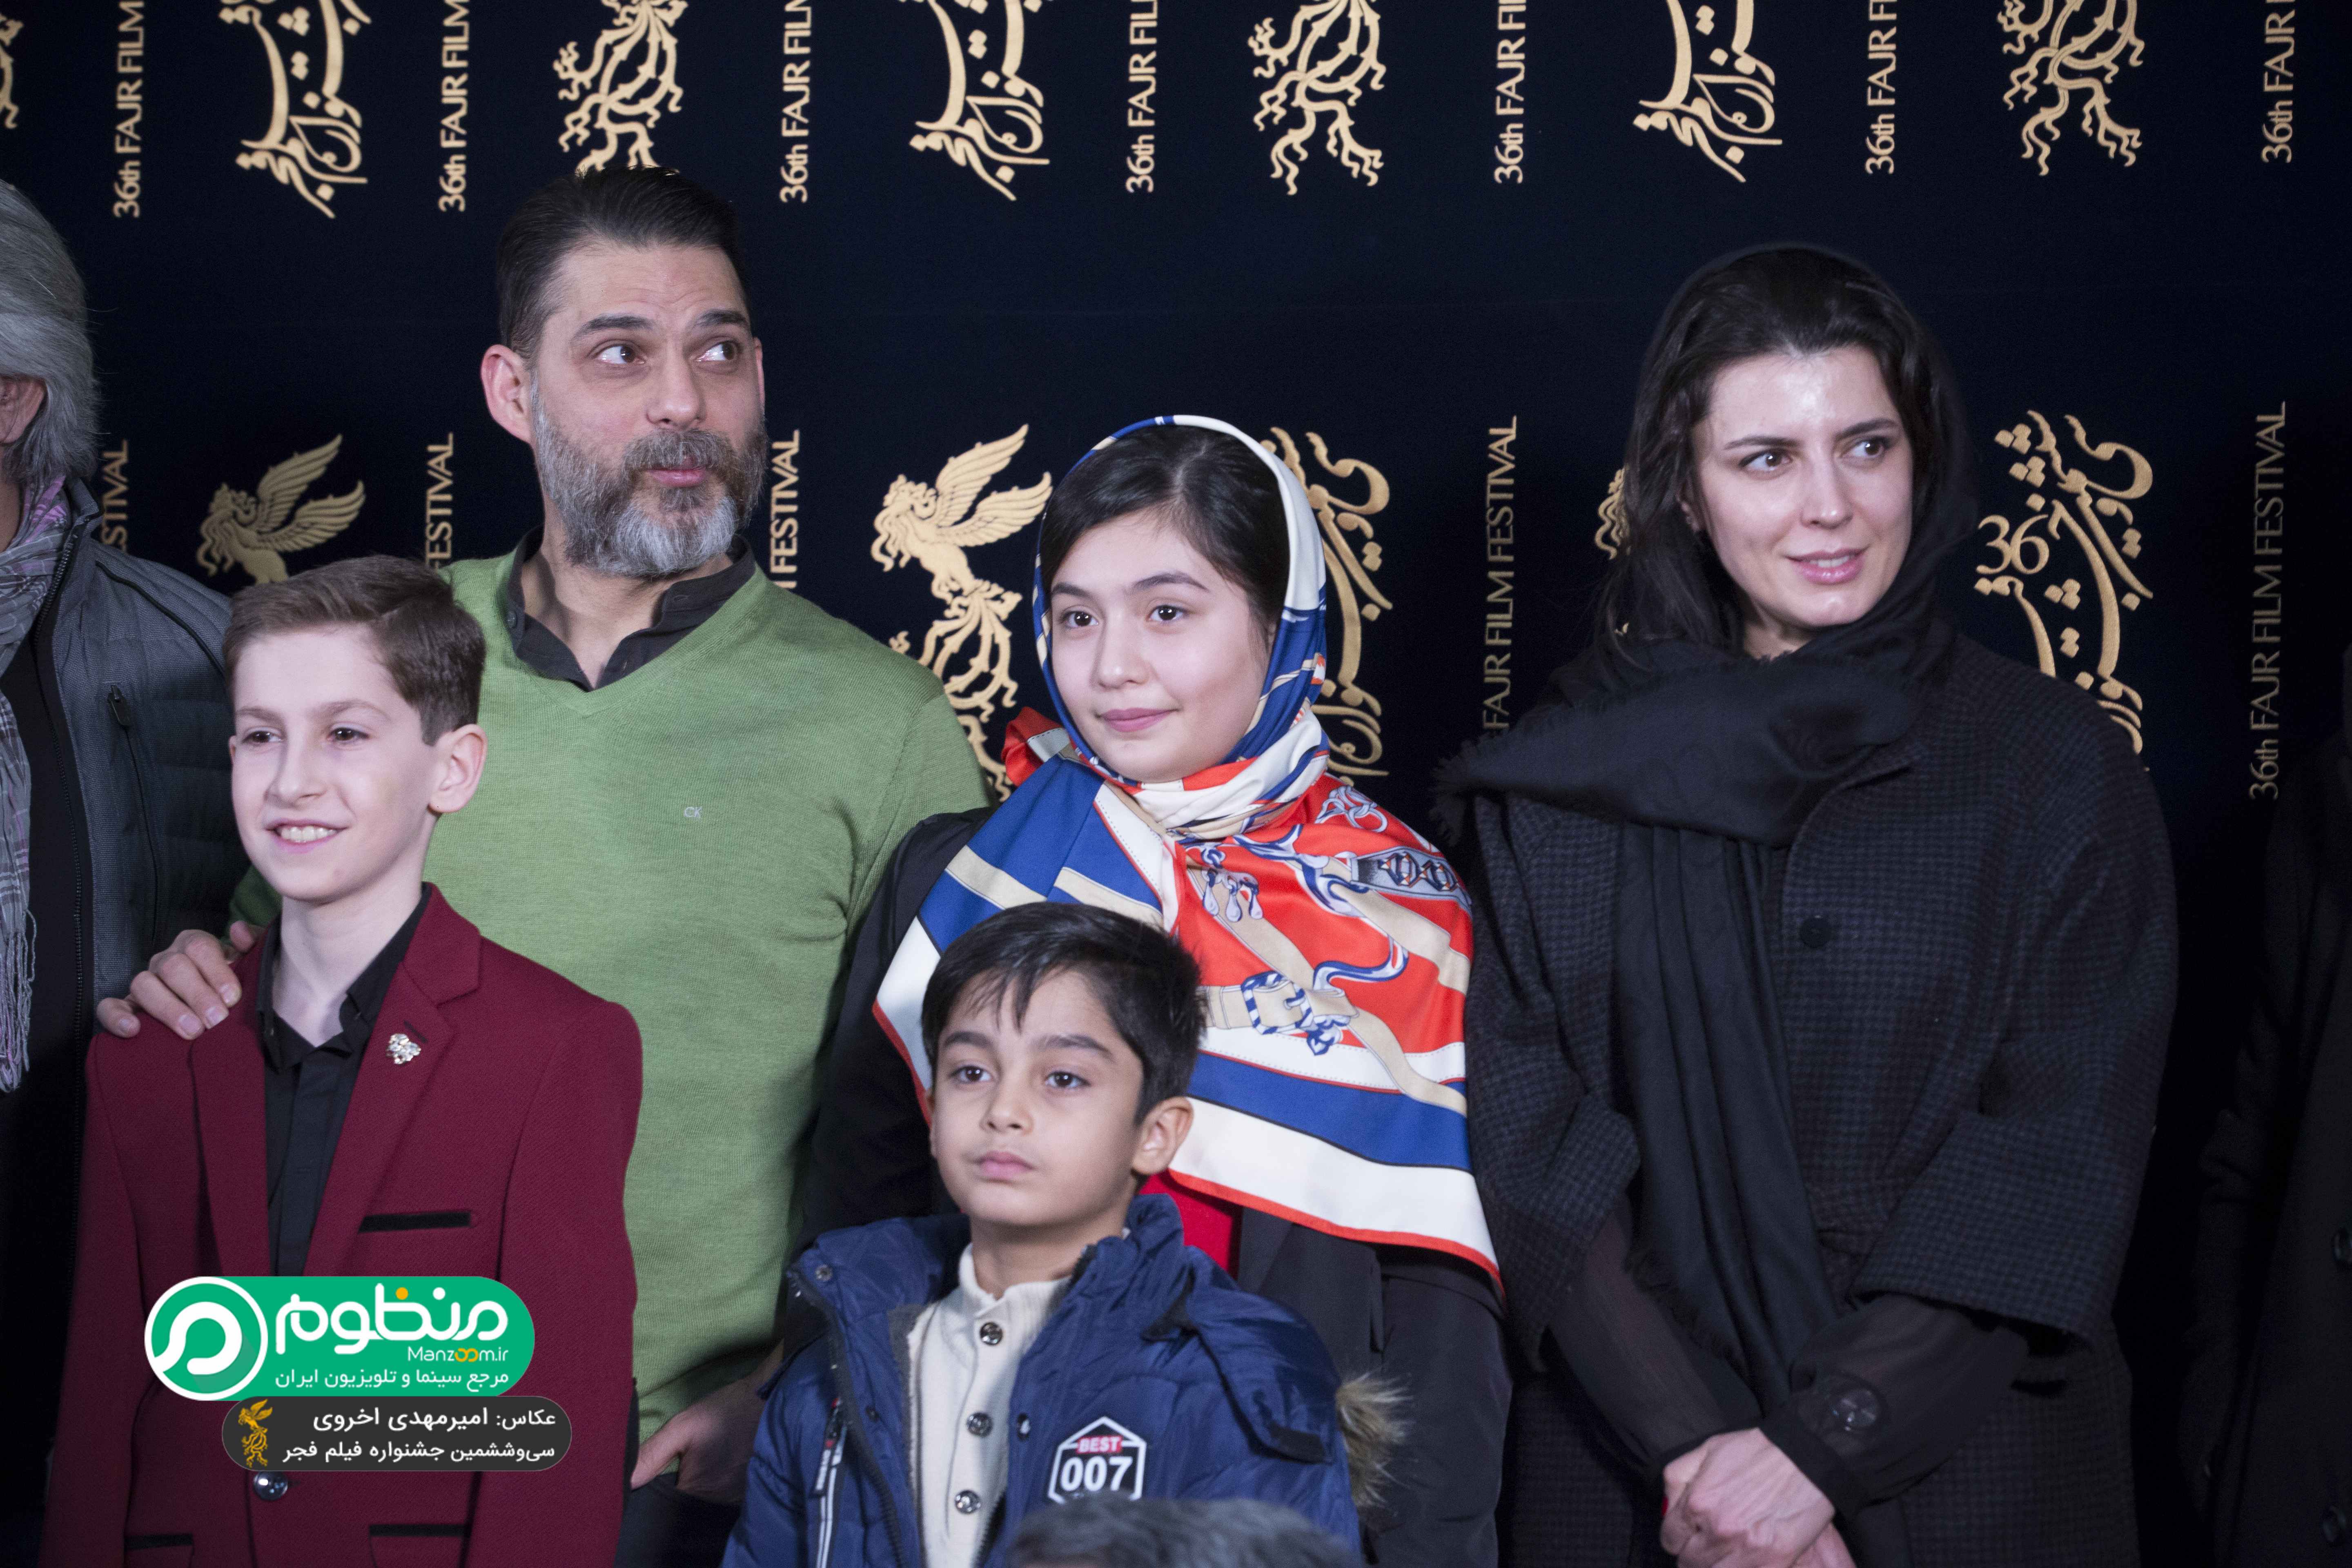 پیمان معادی در جشنواره فیلم سینمایی بمب؛ یک عاشقانه به همراه ارشیا عبداللهی، لیلا حاتمی و باران معادی